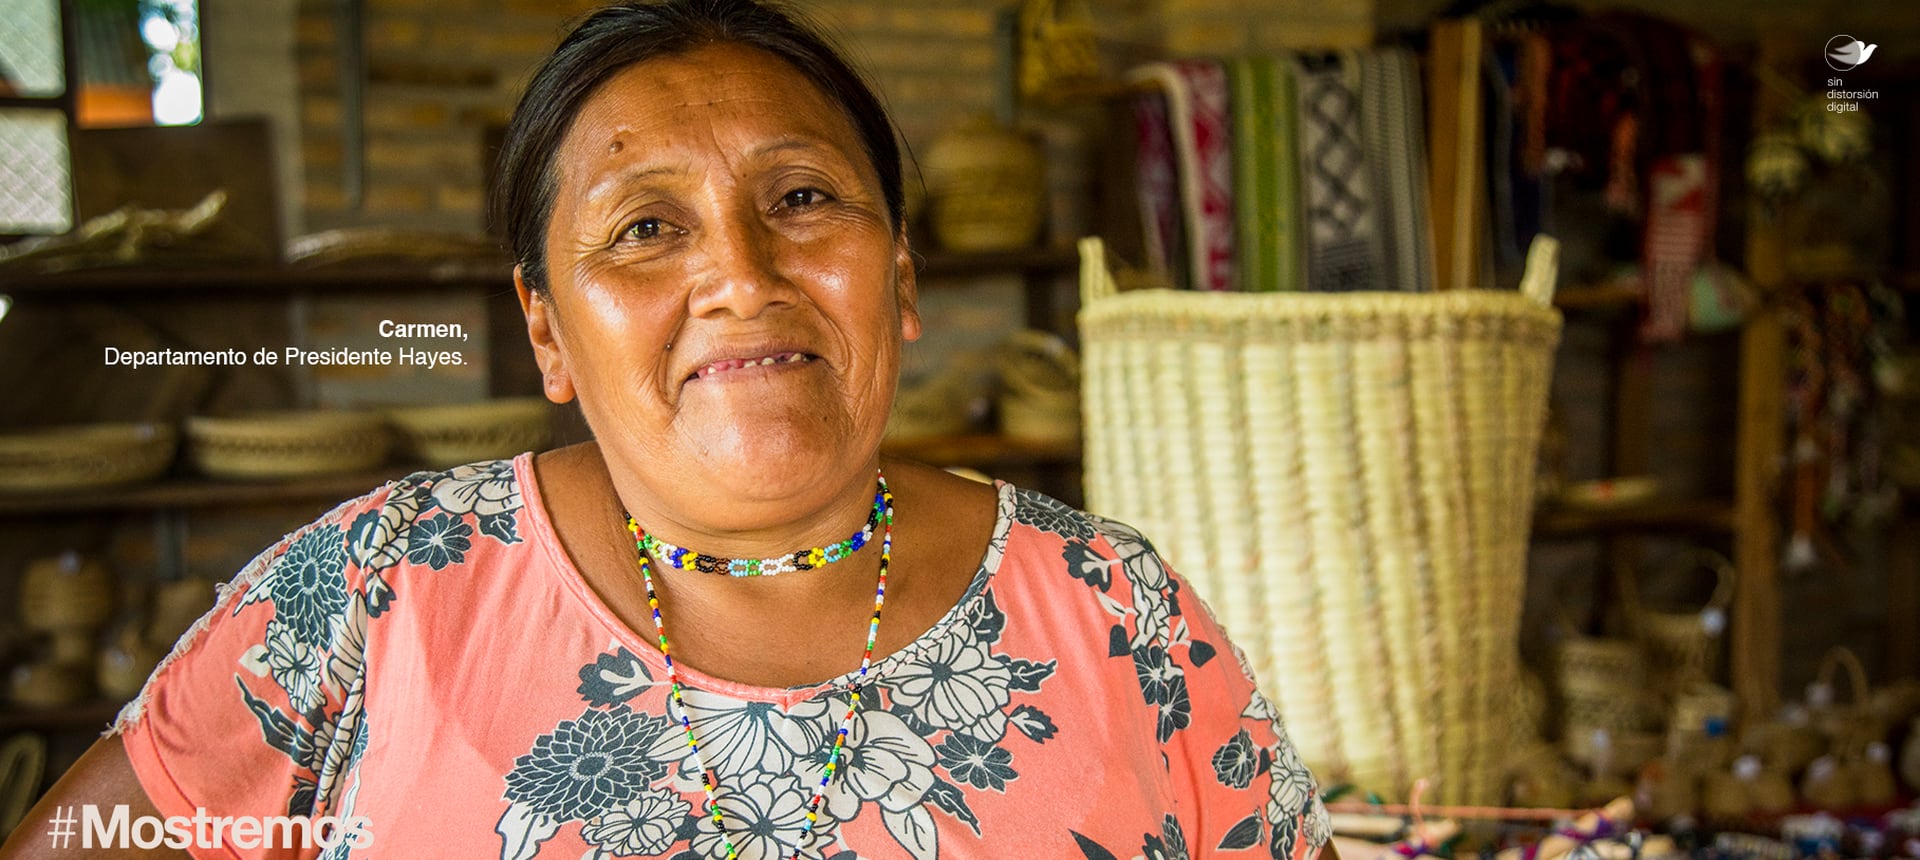 La "Mujer paraguaya" tiene raíces indígenas. Carmen Marín Torres representa al departamento de Pte. Hayes.